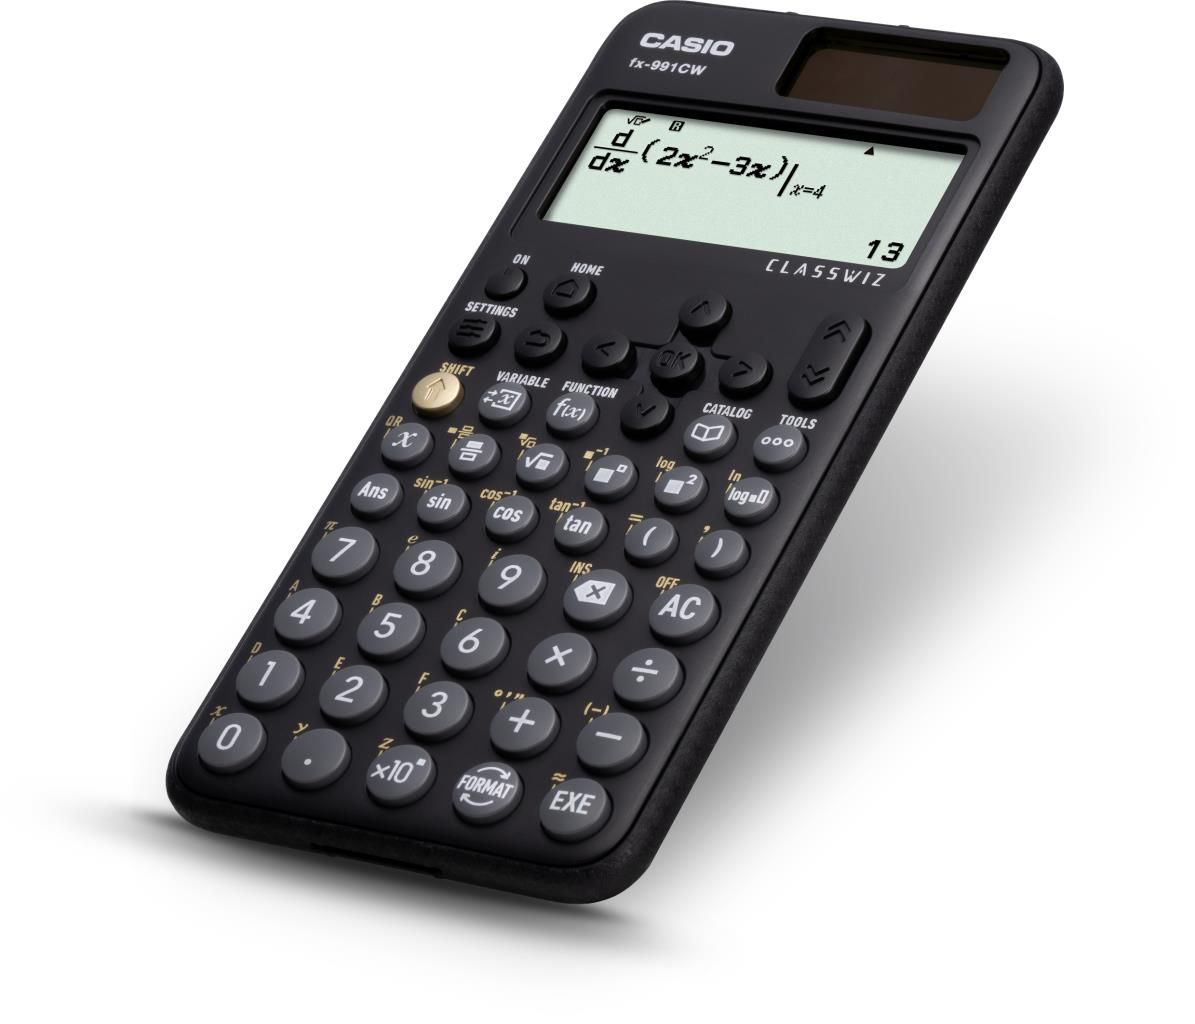 Casio FX-991CW Calcolatrice Scientifica